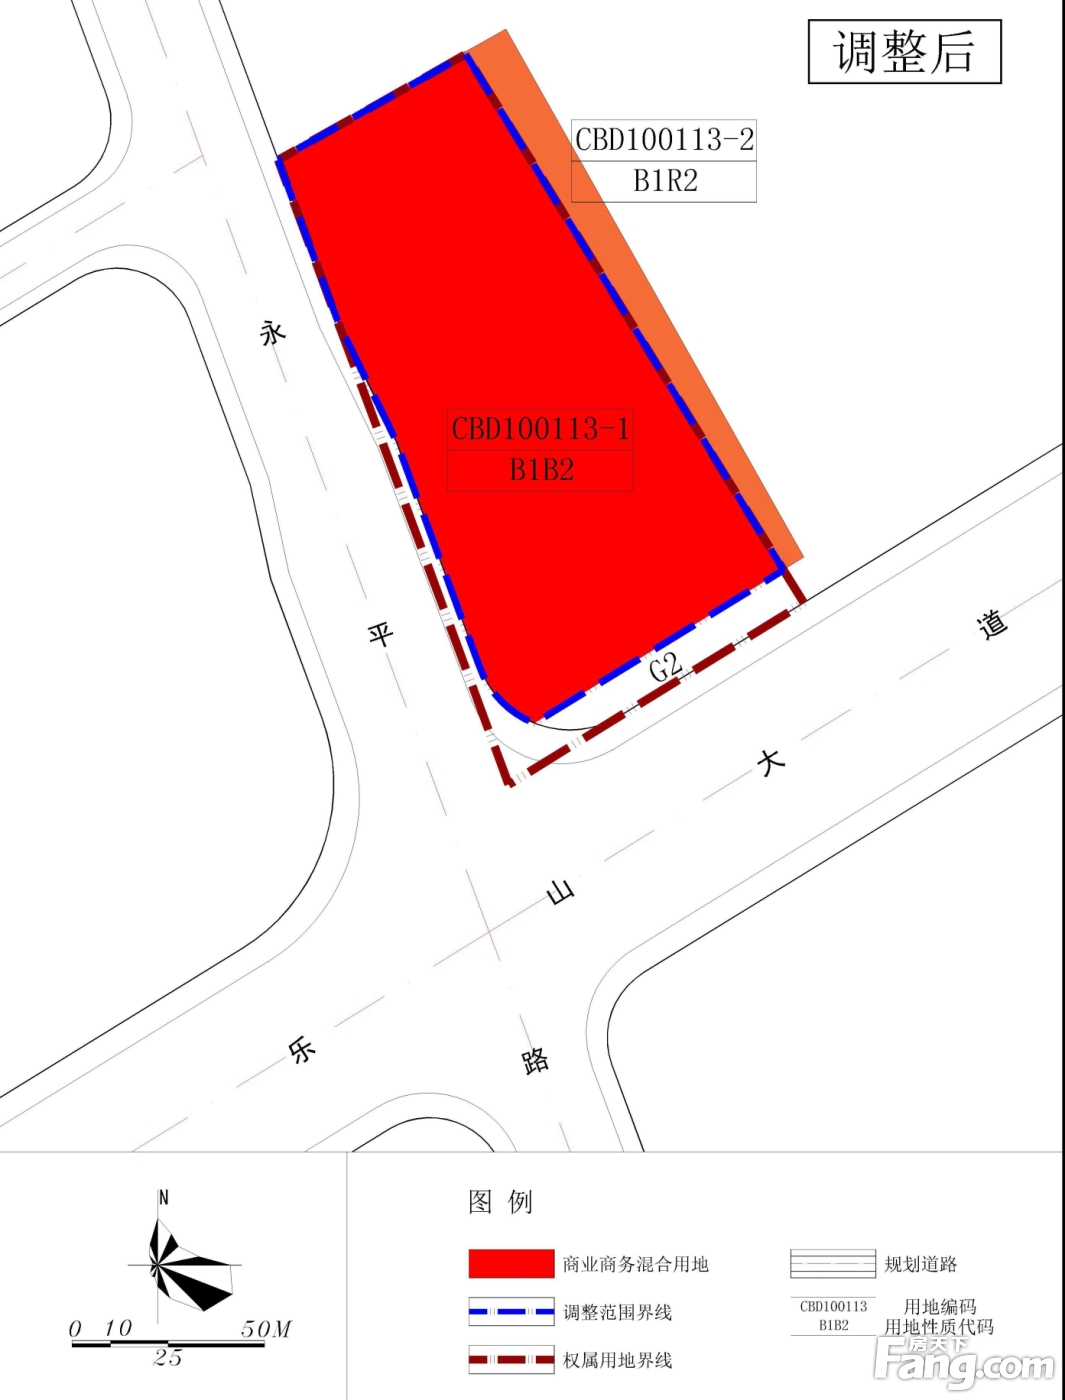 湛江开发区乐山大道旁11003.35㎡地块调整前后土地利用规划对比图批前公示